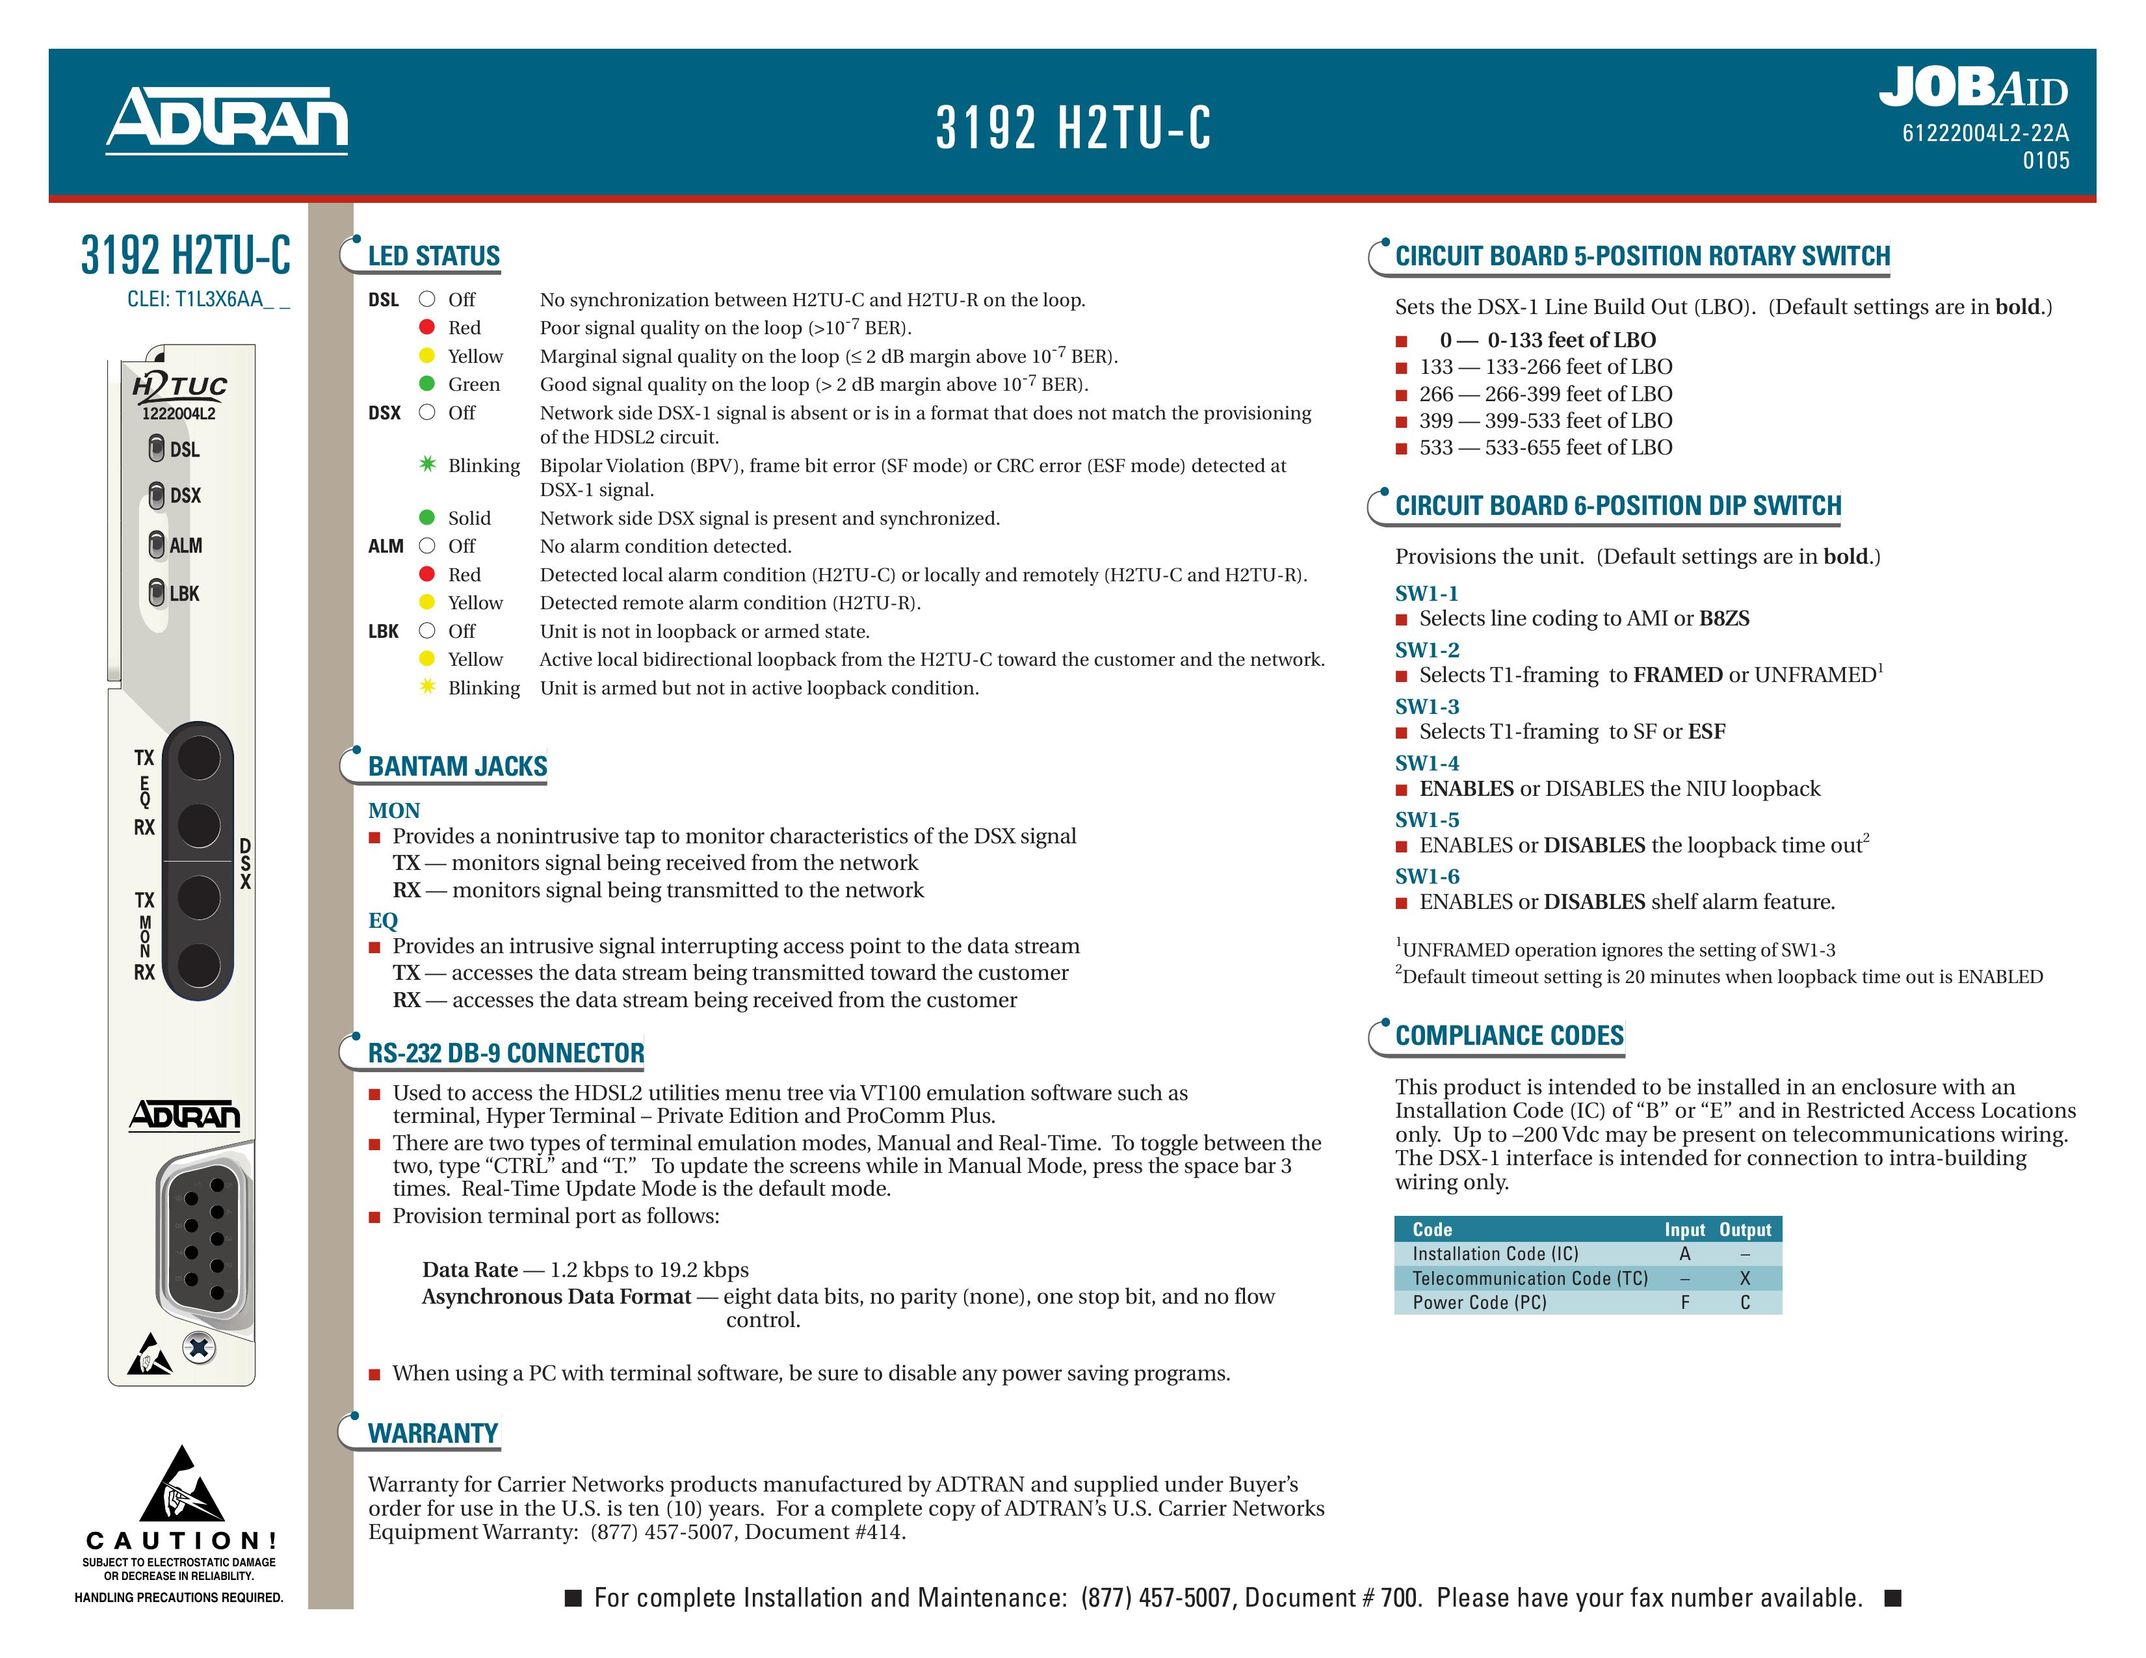 ADTRAN 3192 H2TU-C Switch User Manual